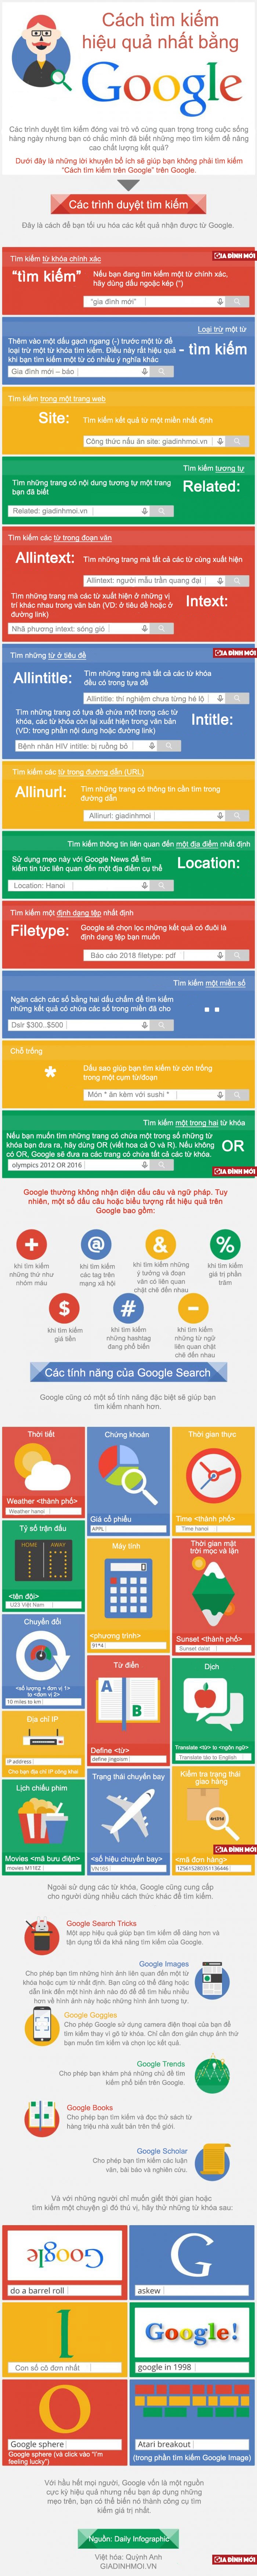 [Infographic] Mẹo tìm kiếm trên Google hiệu quả nhất 1